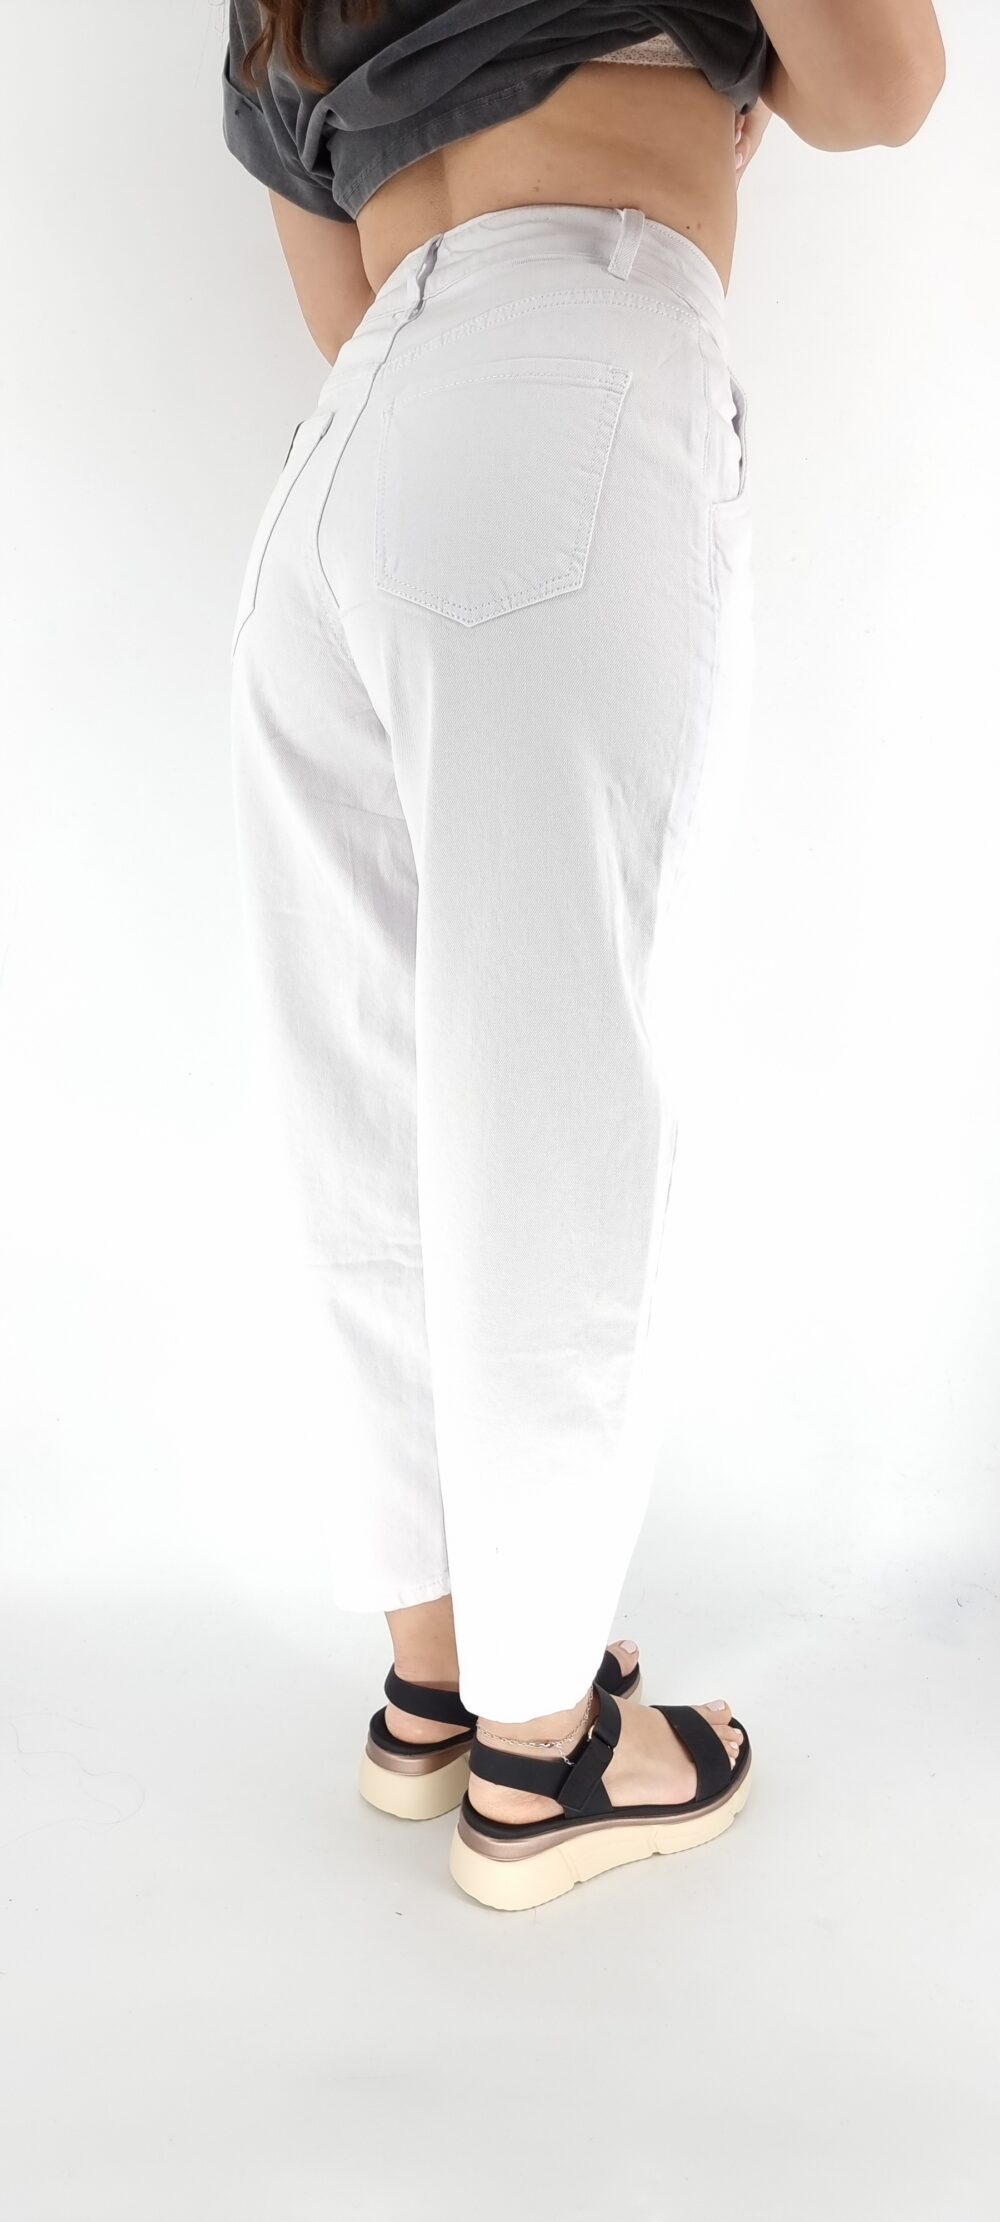 Άσπρο ελαστικό τζιν παντελόνι σε φαρδιά γραμμή